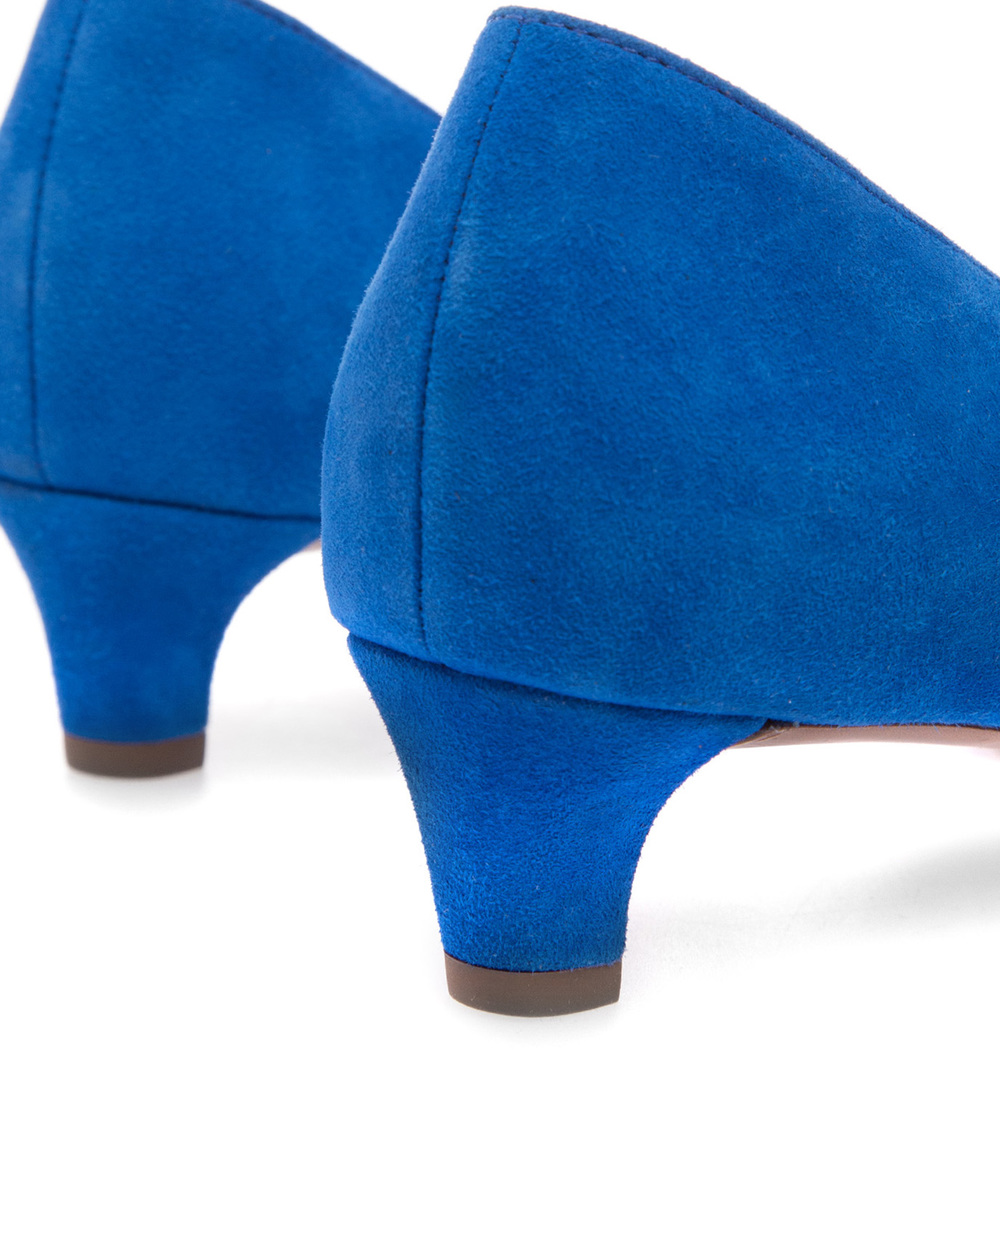 Замшевые туфли Polo Ralph Lauren 818740408003, синий цвет • Купить в интернет-магазине Kameron